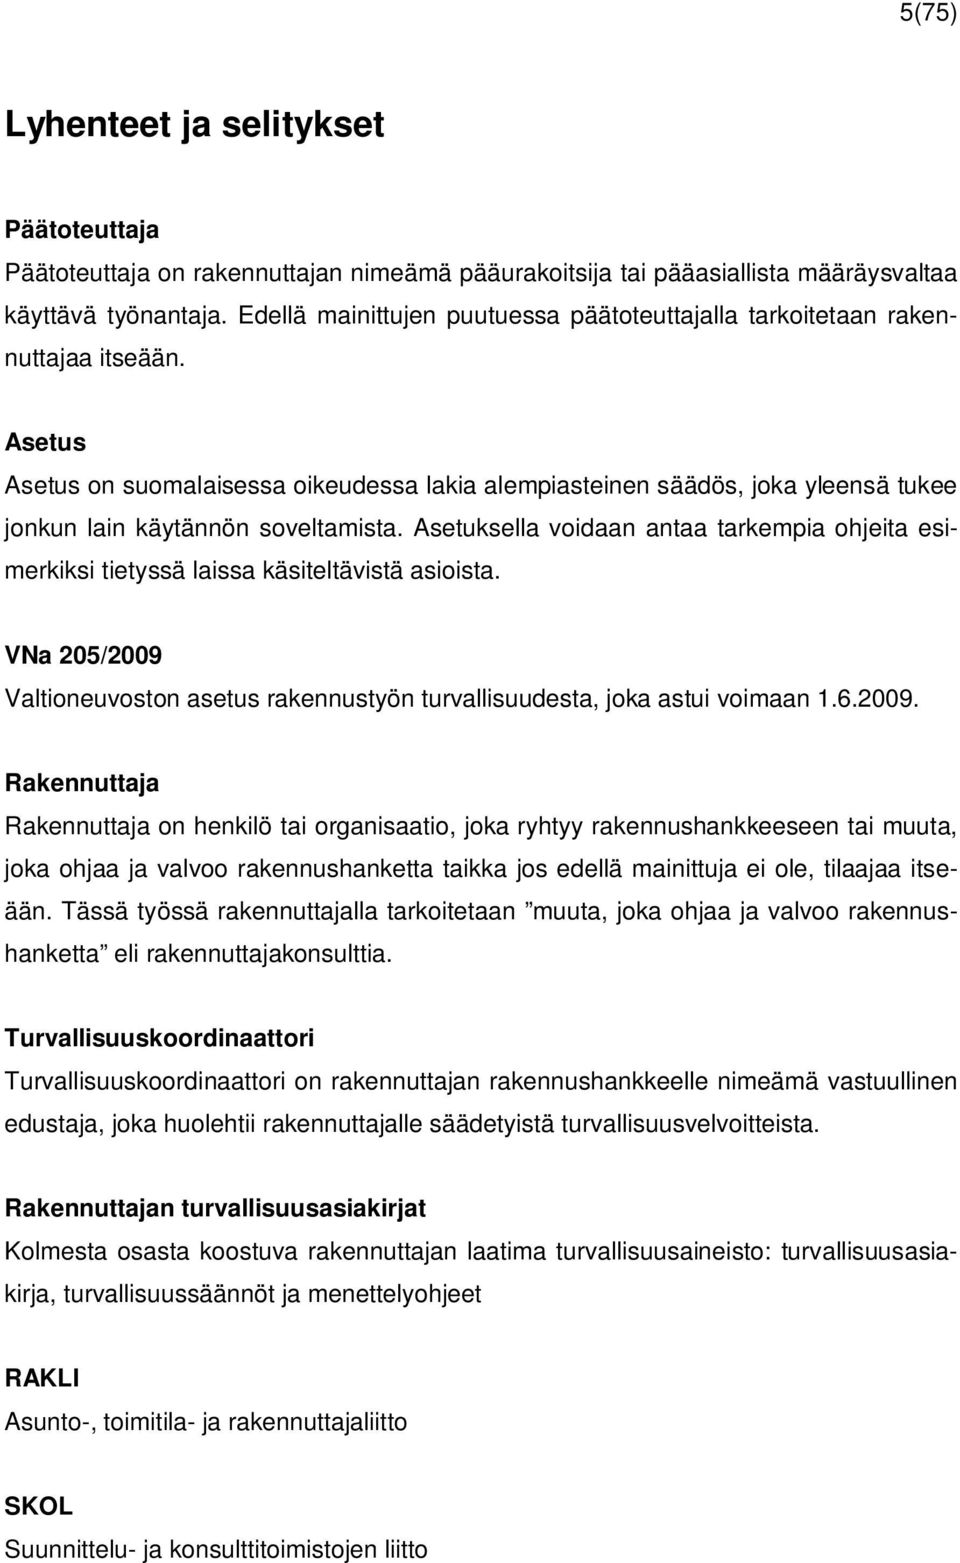 Asetus Asetus on suomalaisessa oikeudessa lakia alempiasteinen säädös, joka yleensä tukee jonkun lain käytännön soveltamista.